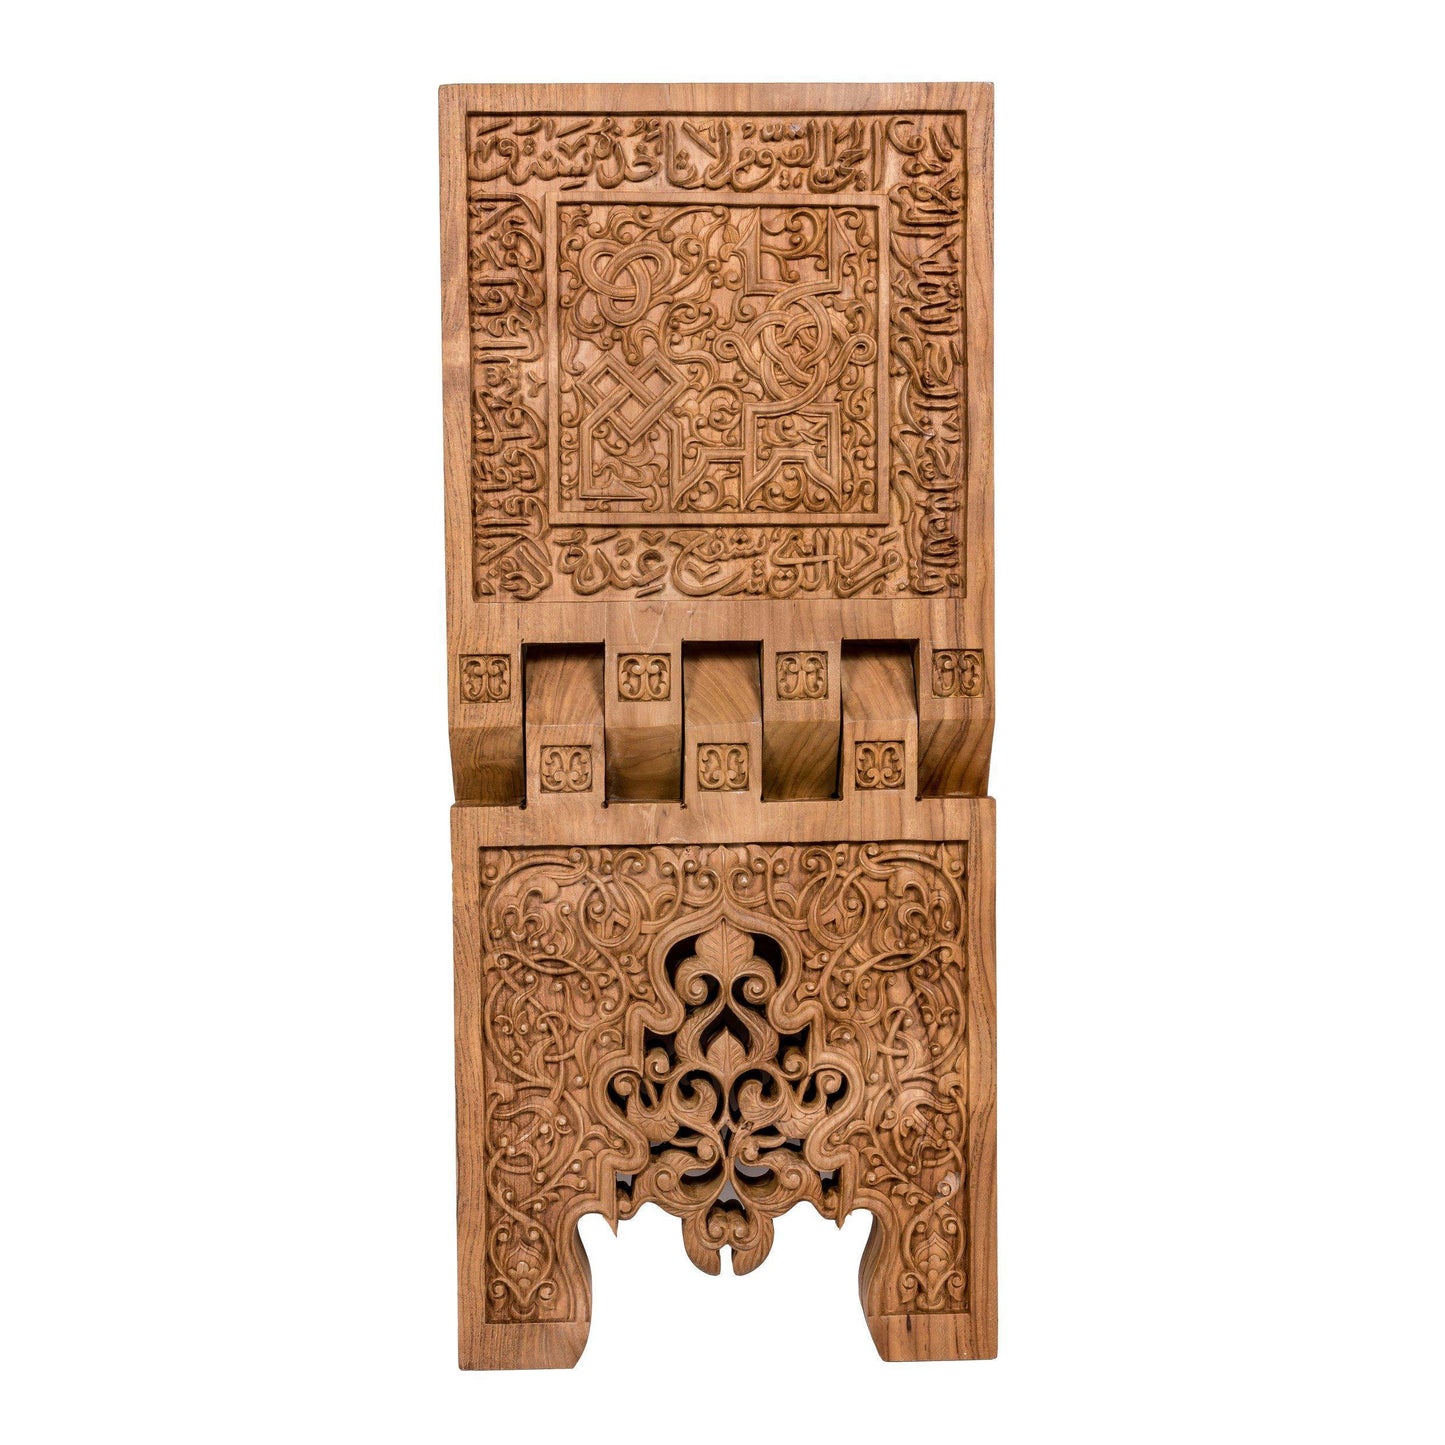 Rehal - Chip Carving - 30cm Length x 70cm Height - Ayatul Kursi - Mahajati